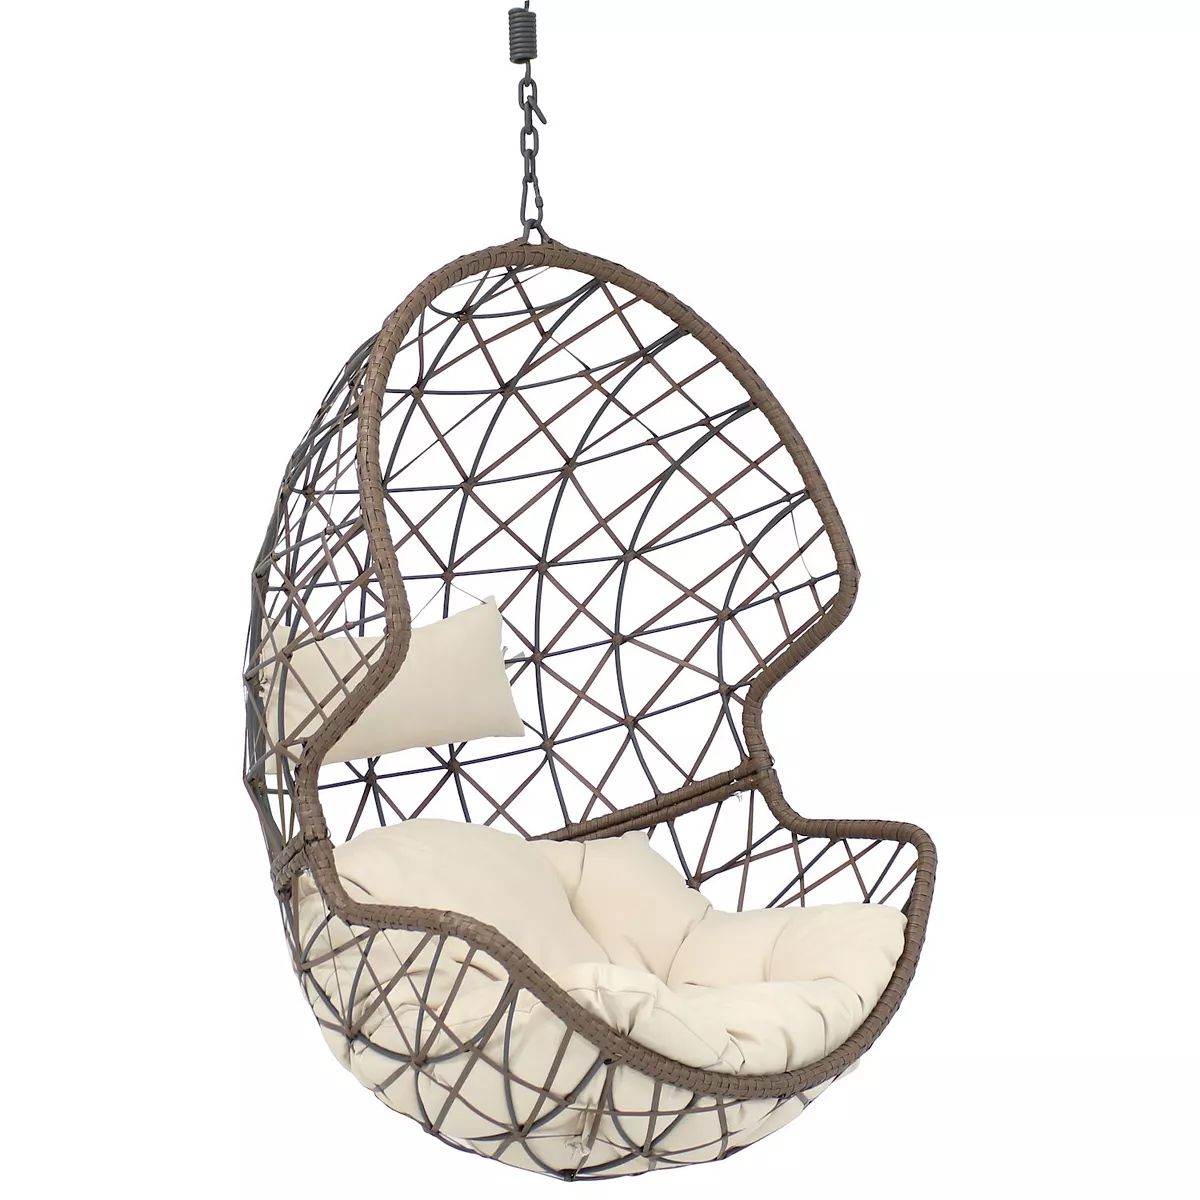 Sunnydaze Danielle Hanging Egg Chair - Resin Wicker | Kohl's